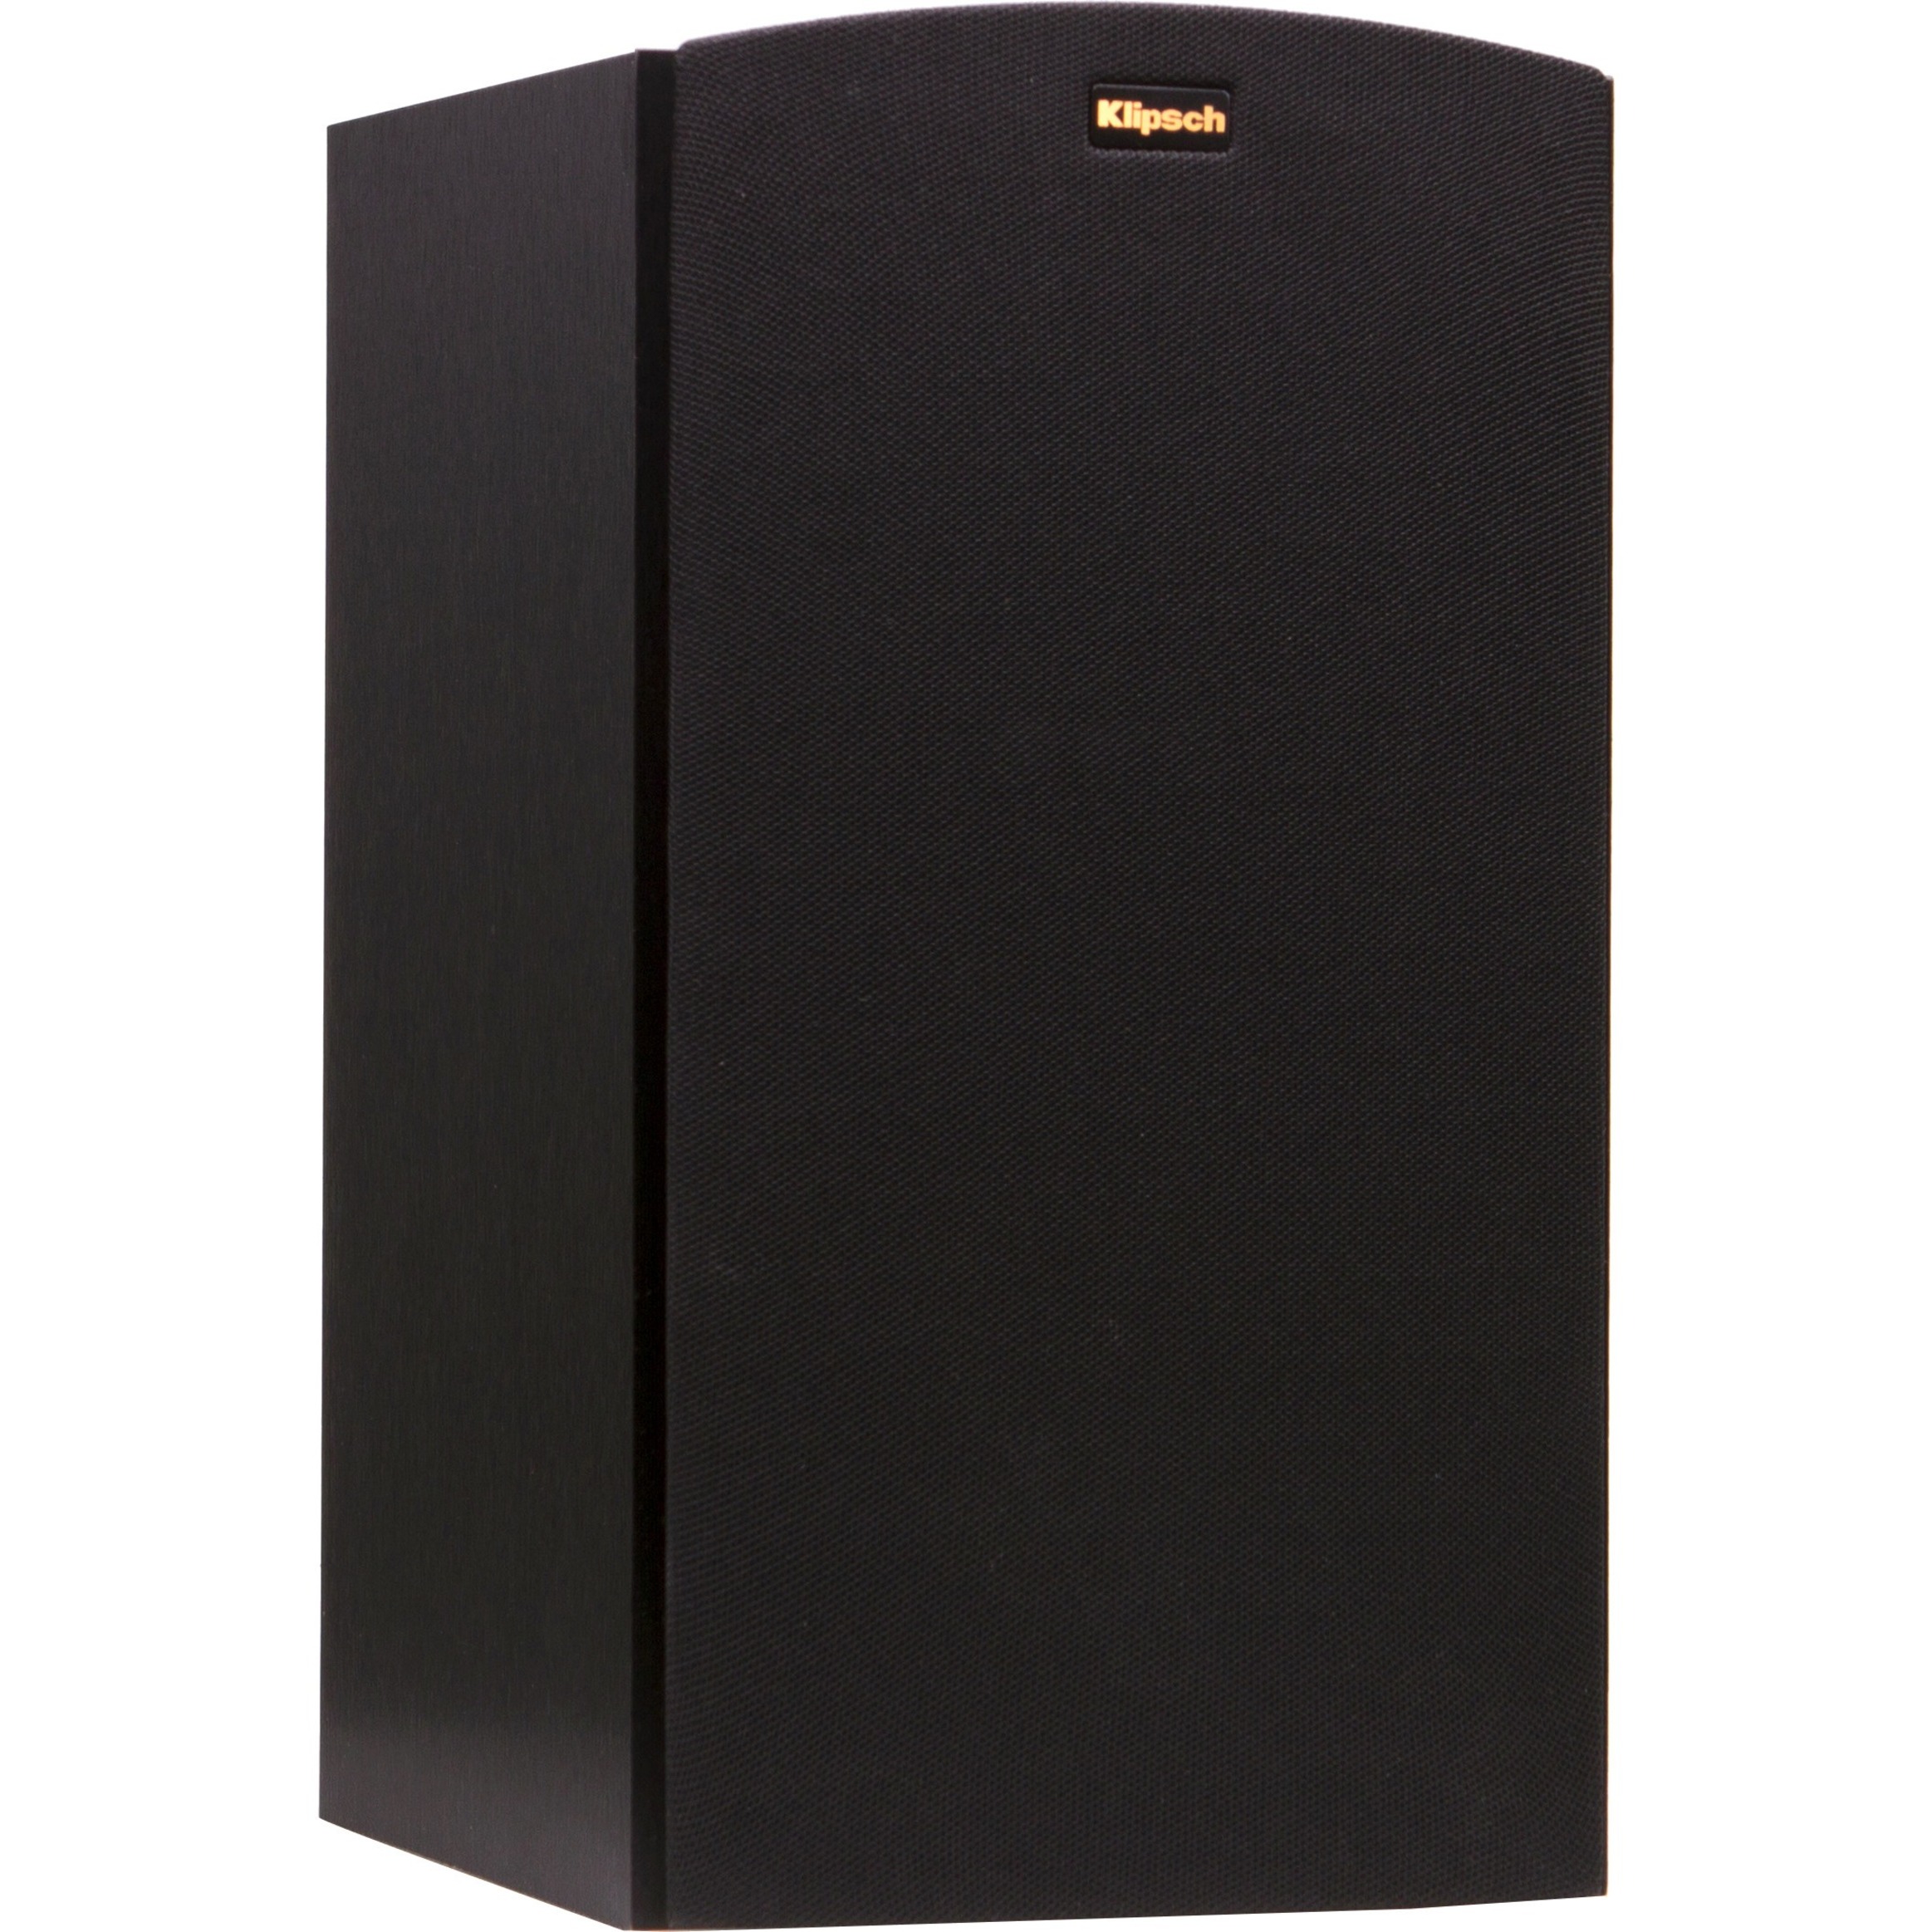 Klipsch R-15M Bookshelf Speaker, 85 W RMS, Brushed Black Veneer - image 1 of 4